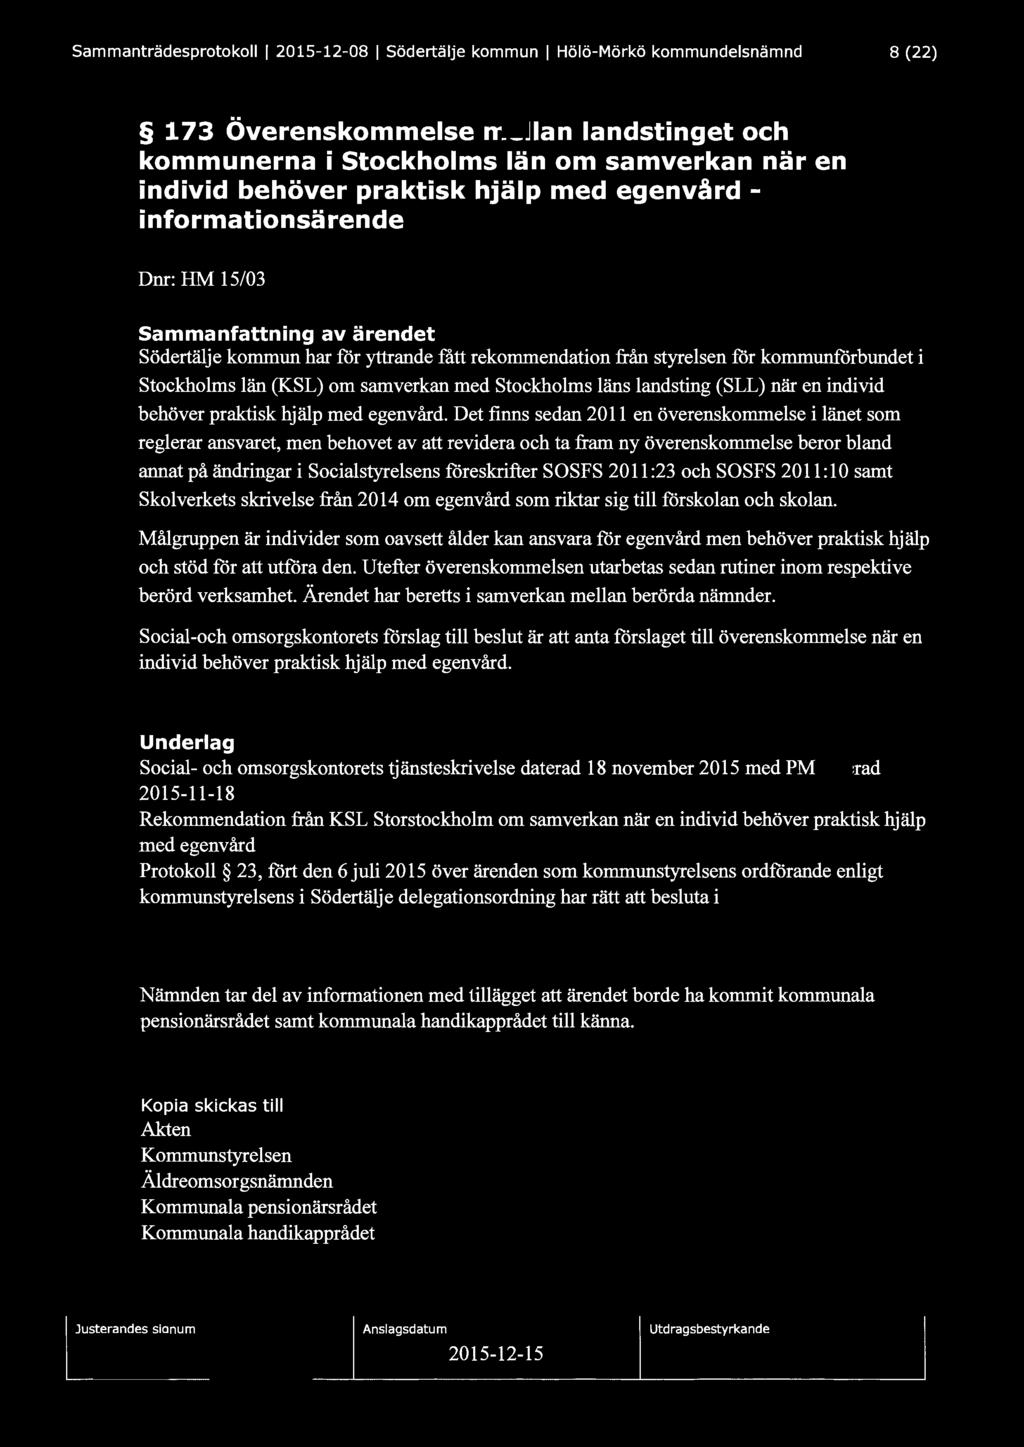 Sammanträdesprotokoll l 2015-12-08 1 Södertälje kommun 1 Hölö-Mörkö kommundelsnämnd 8 (22) 173 Överenskommelse mellan landstinget och ko munerna i Stockholms län om samverkan när en individ behöver